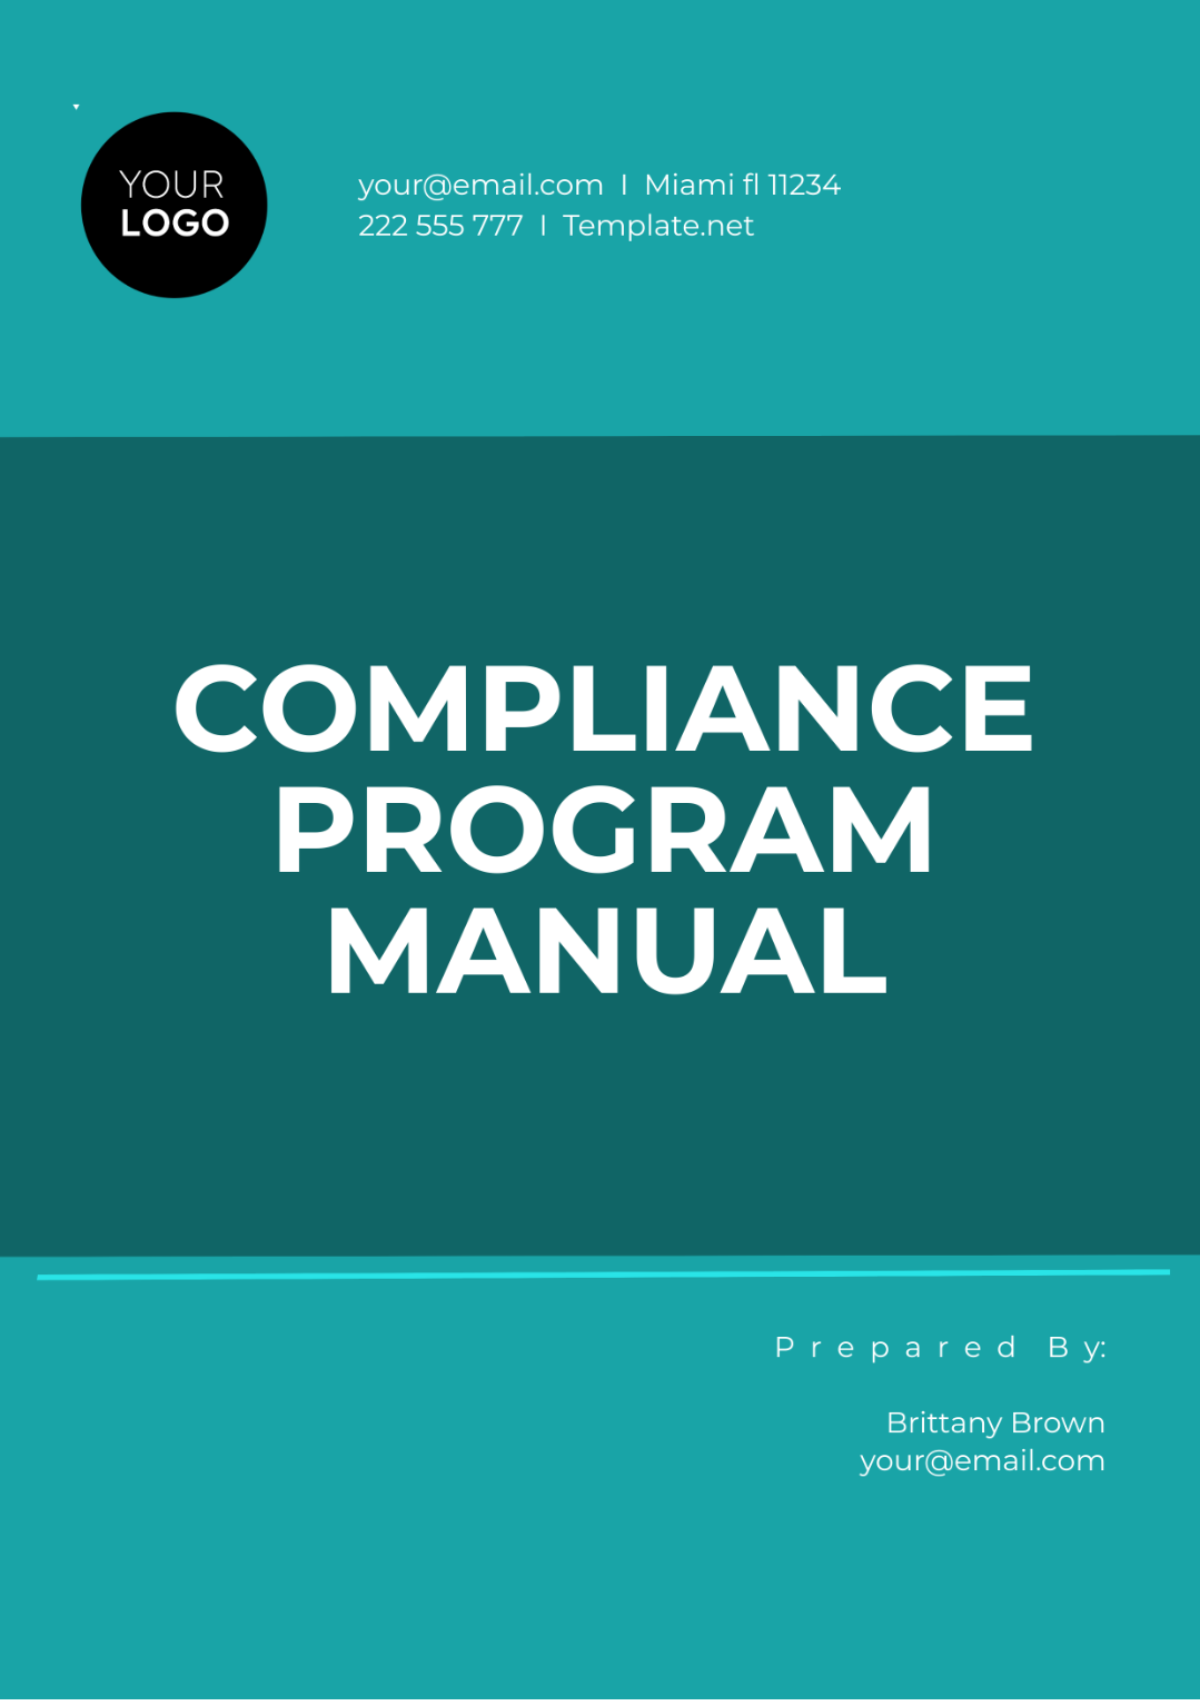 Compliance Program Manual Template